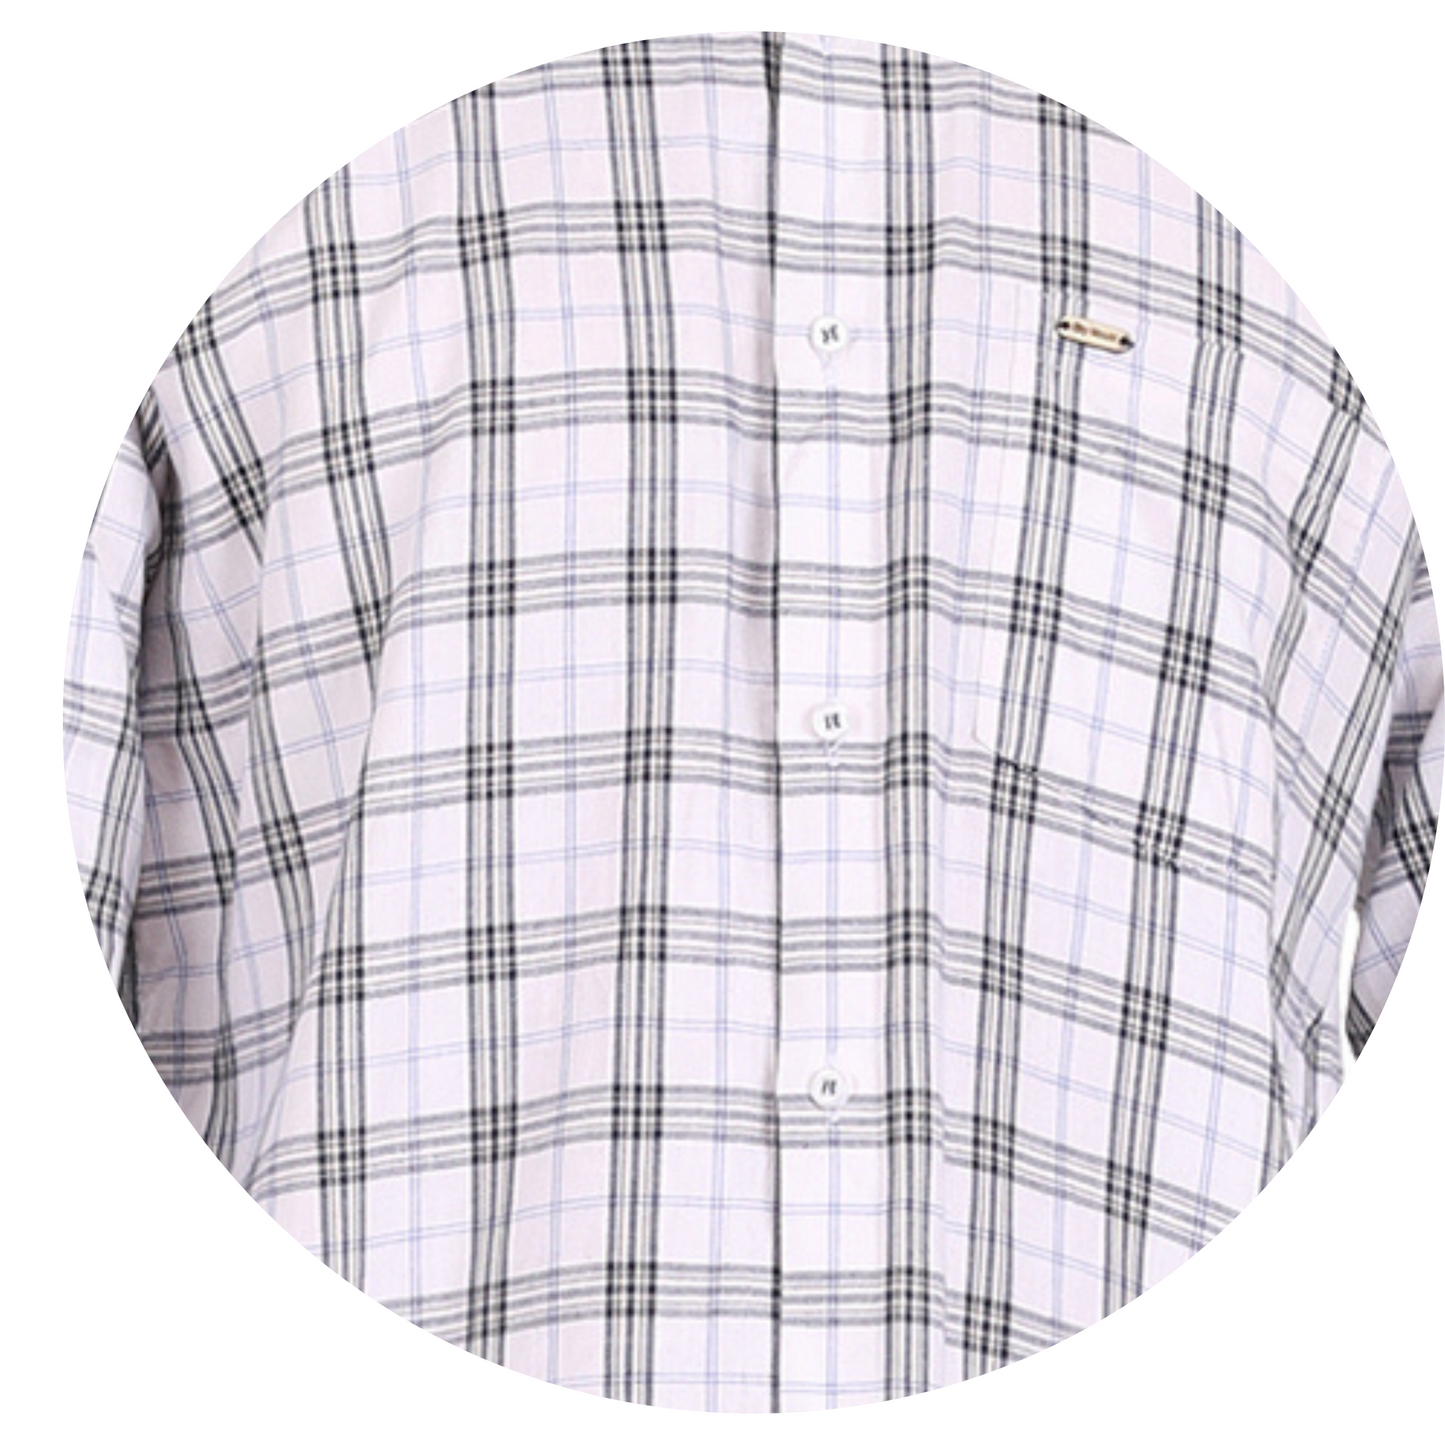 Classic Checkered Elegance: Timeless White Shirt for Men